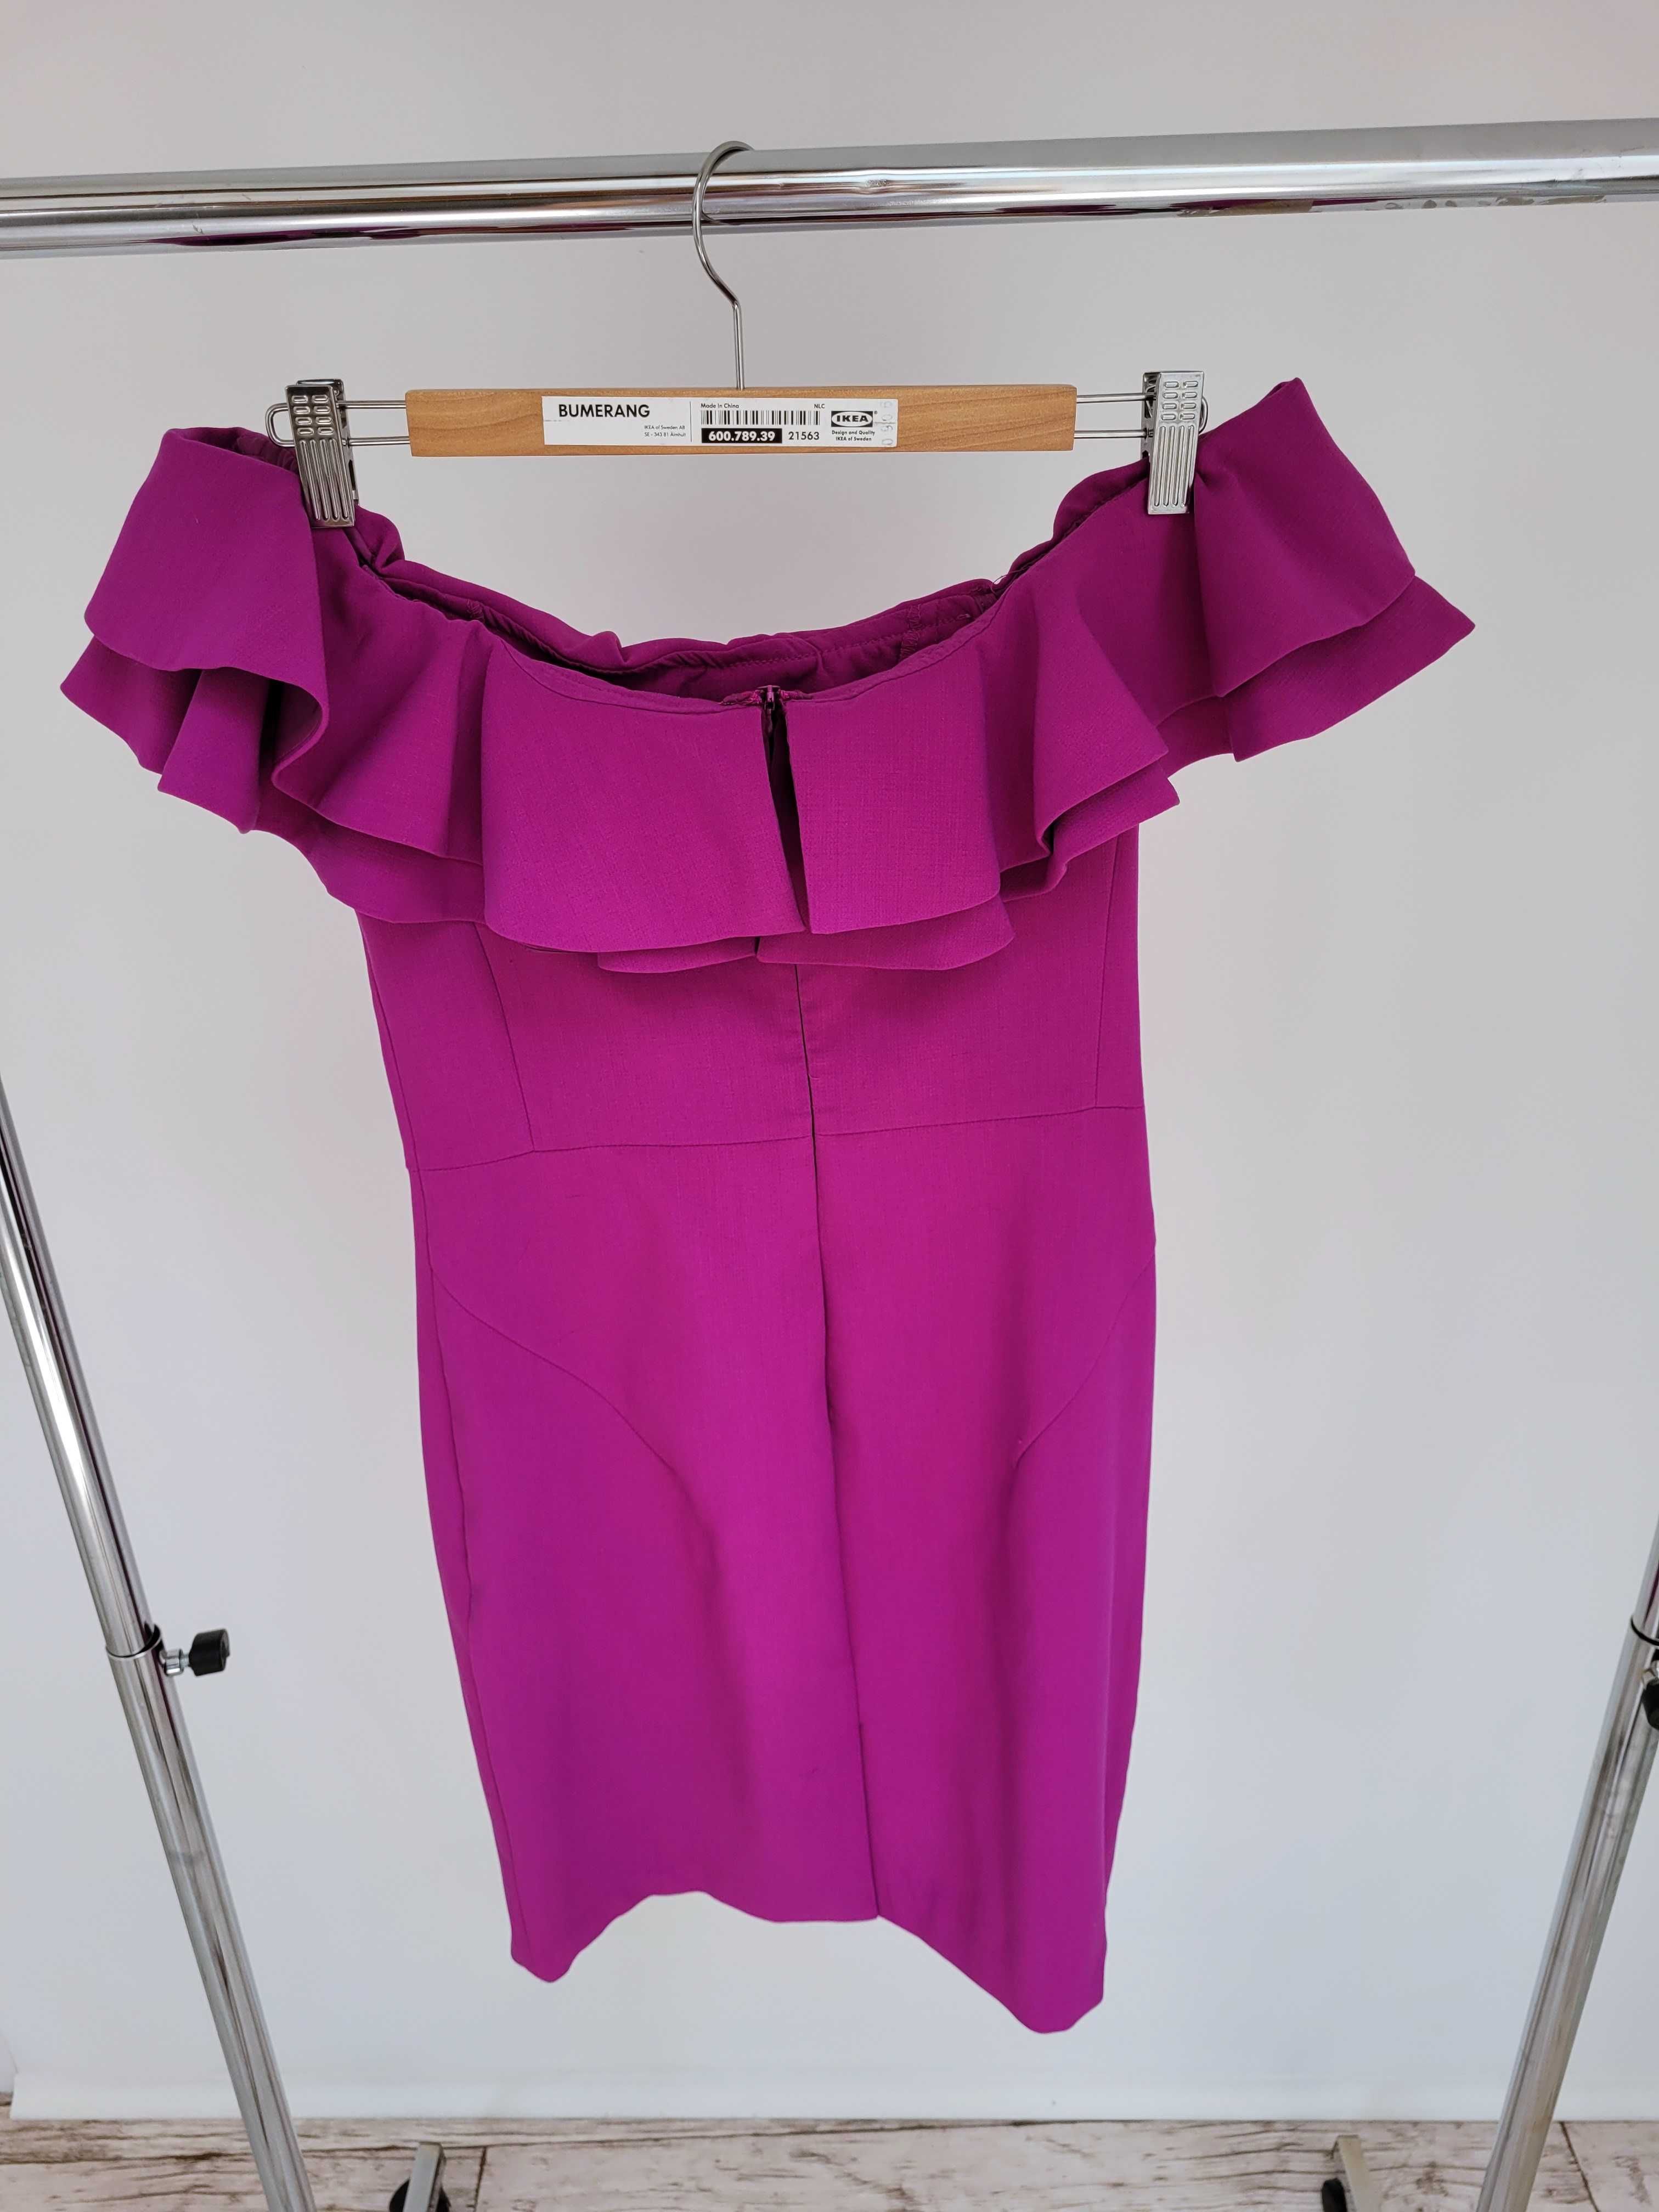 Fioletowa sukienka koktajlowa odkryte ramiona święta sylwester wesle